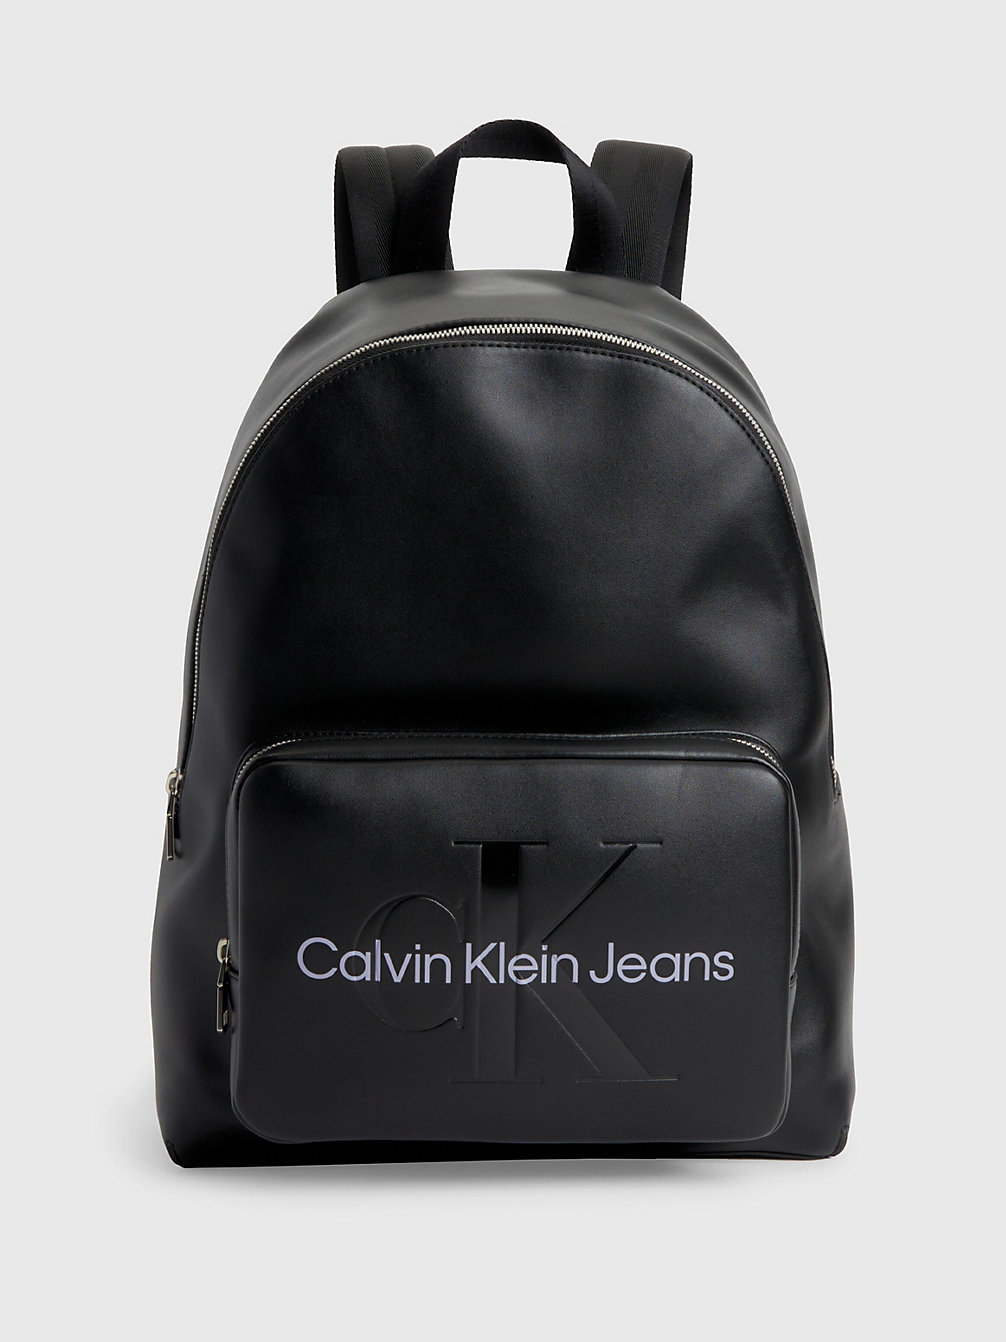 FASHION BLACK > Runder Rucksack > undefined Damen - Calvin Klein